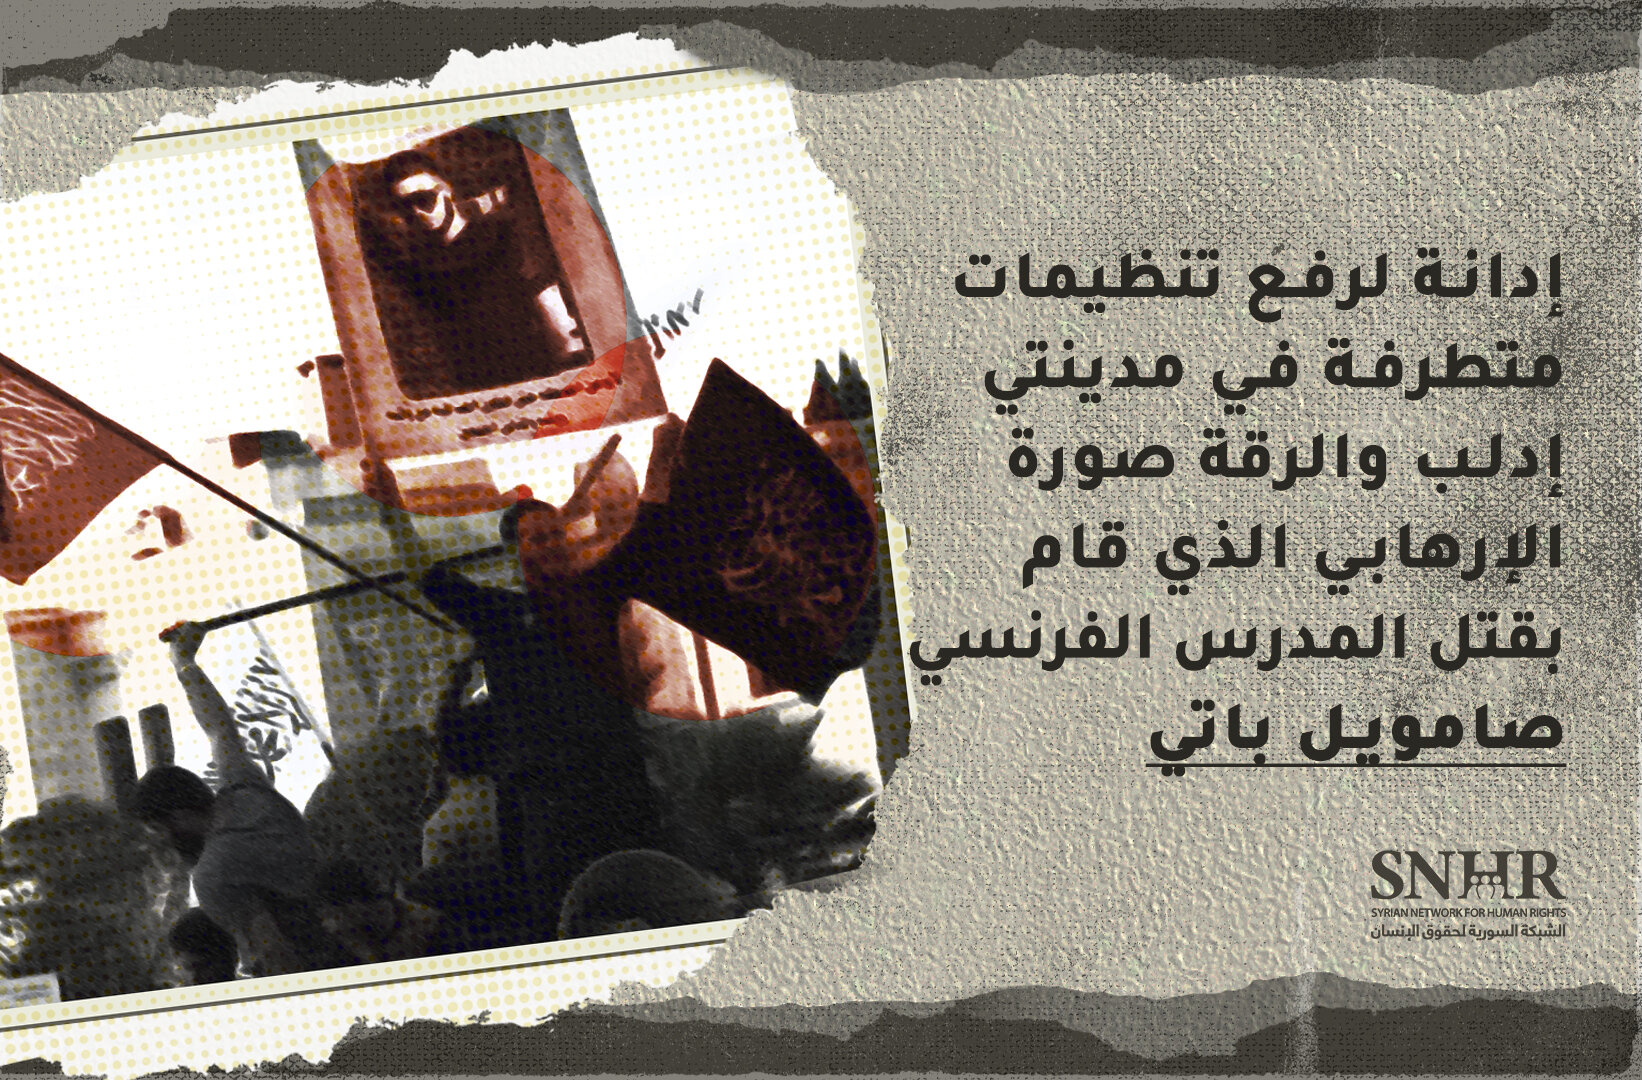 إدانة لرفع تنظيمات متطرفة في مدينتي إدلب والرقة صورة الإرهابي الذي قام بقتل المدرس الفرنسي صامويل باتي